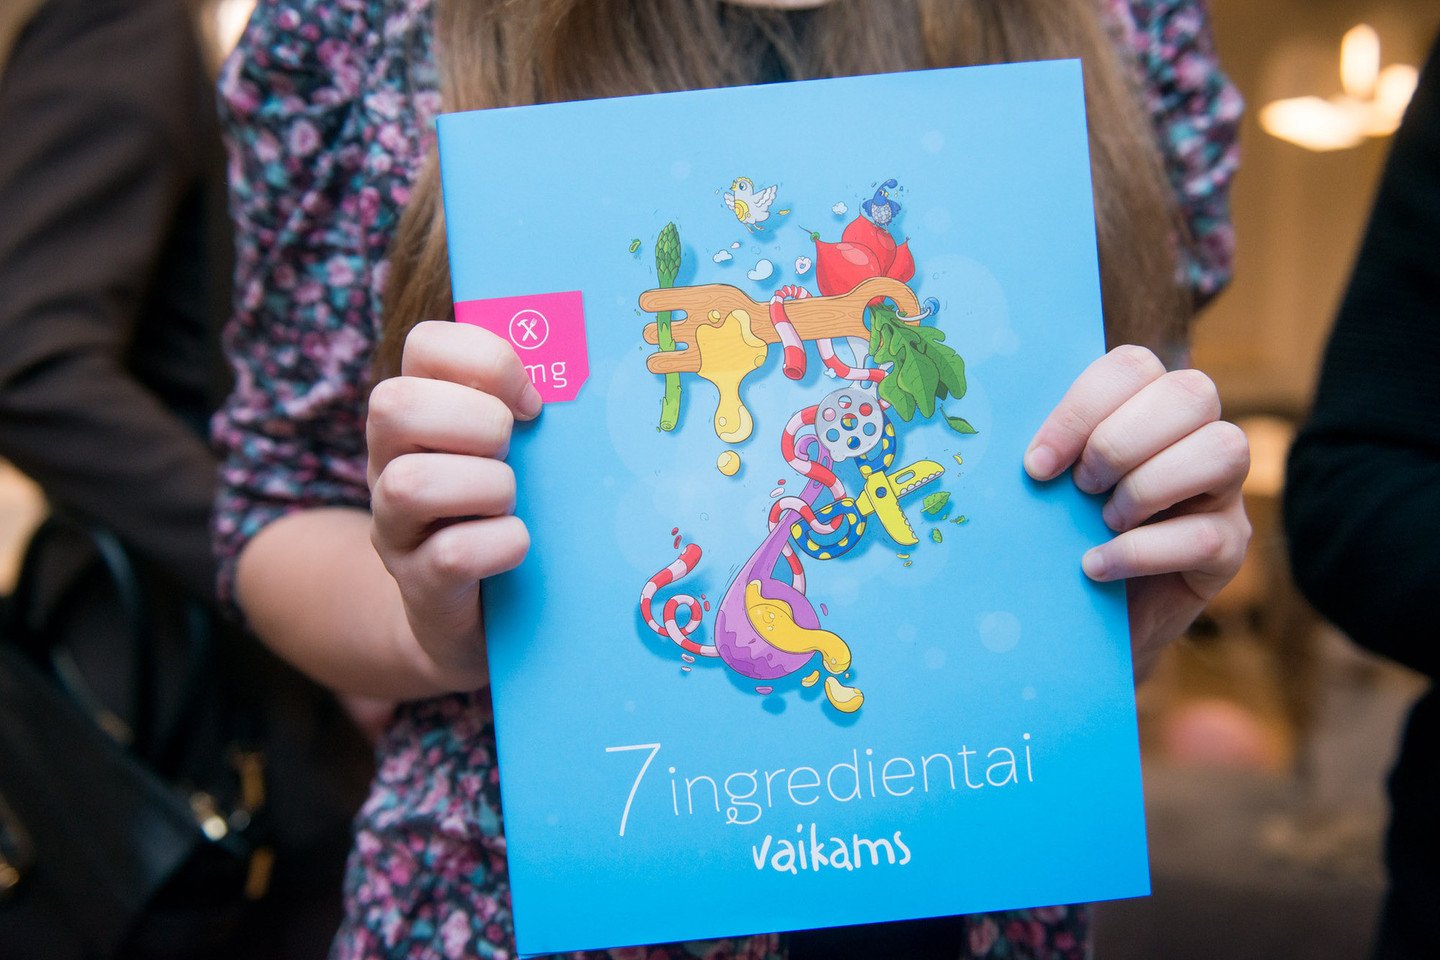 Į VMG knygos vaikams pristatymą žvaigždės atėjo su atžalomis.<br>J.Stacevičiaus nuotr.